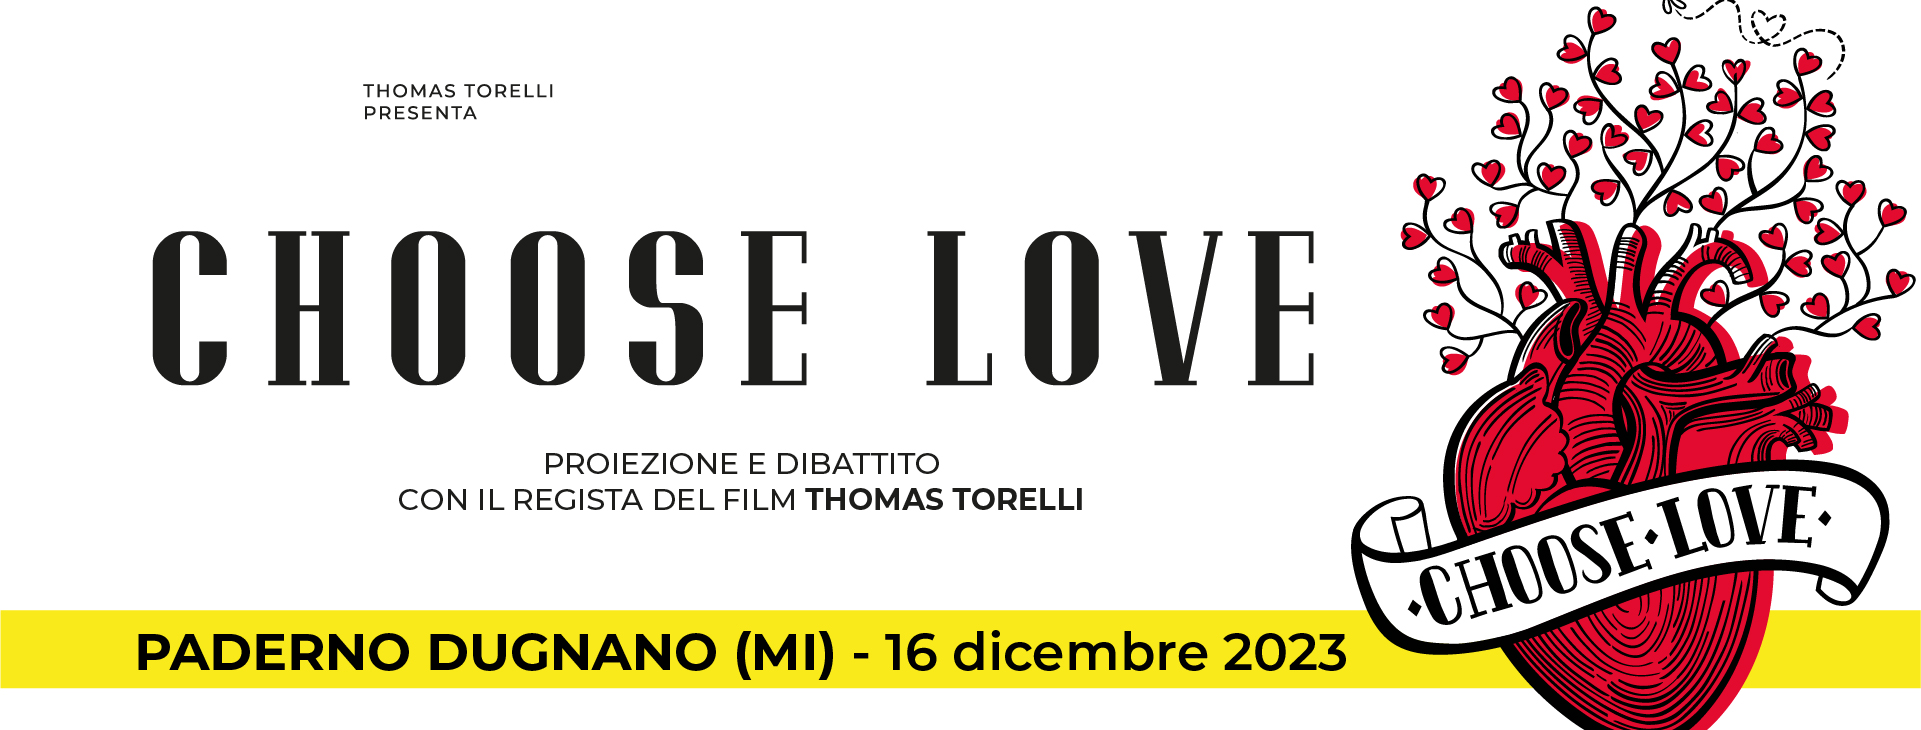 "Choose love" - TILANE CENTRO CULTURALE - PADERNO DUGNANO